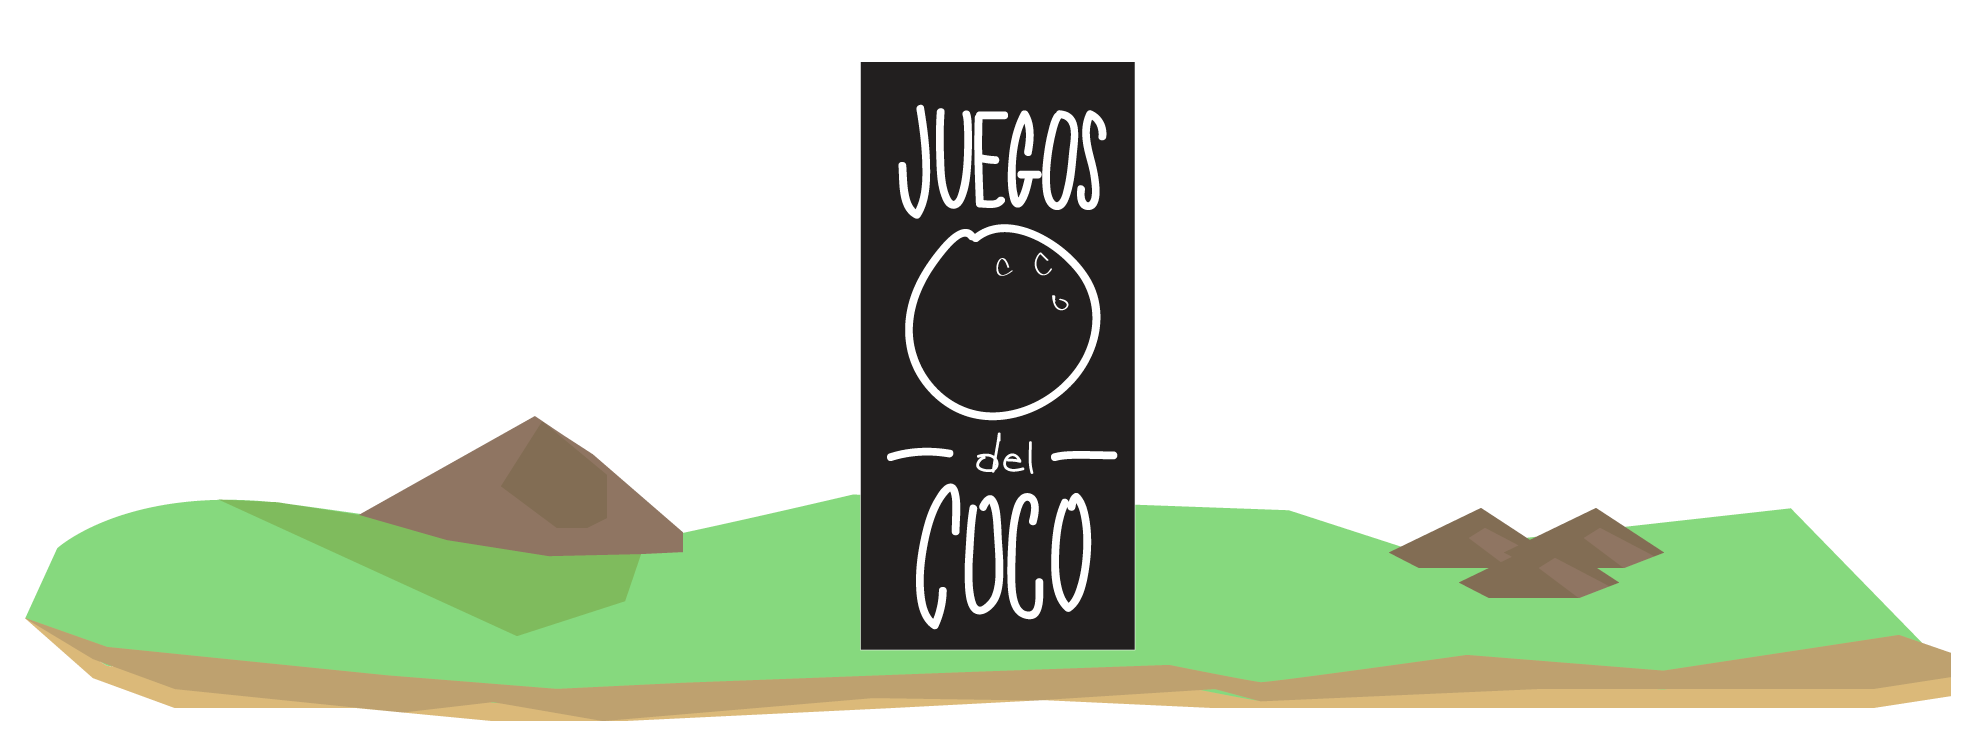 Los juegos del Coco